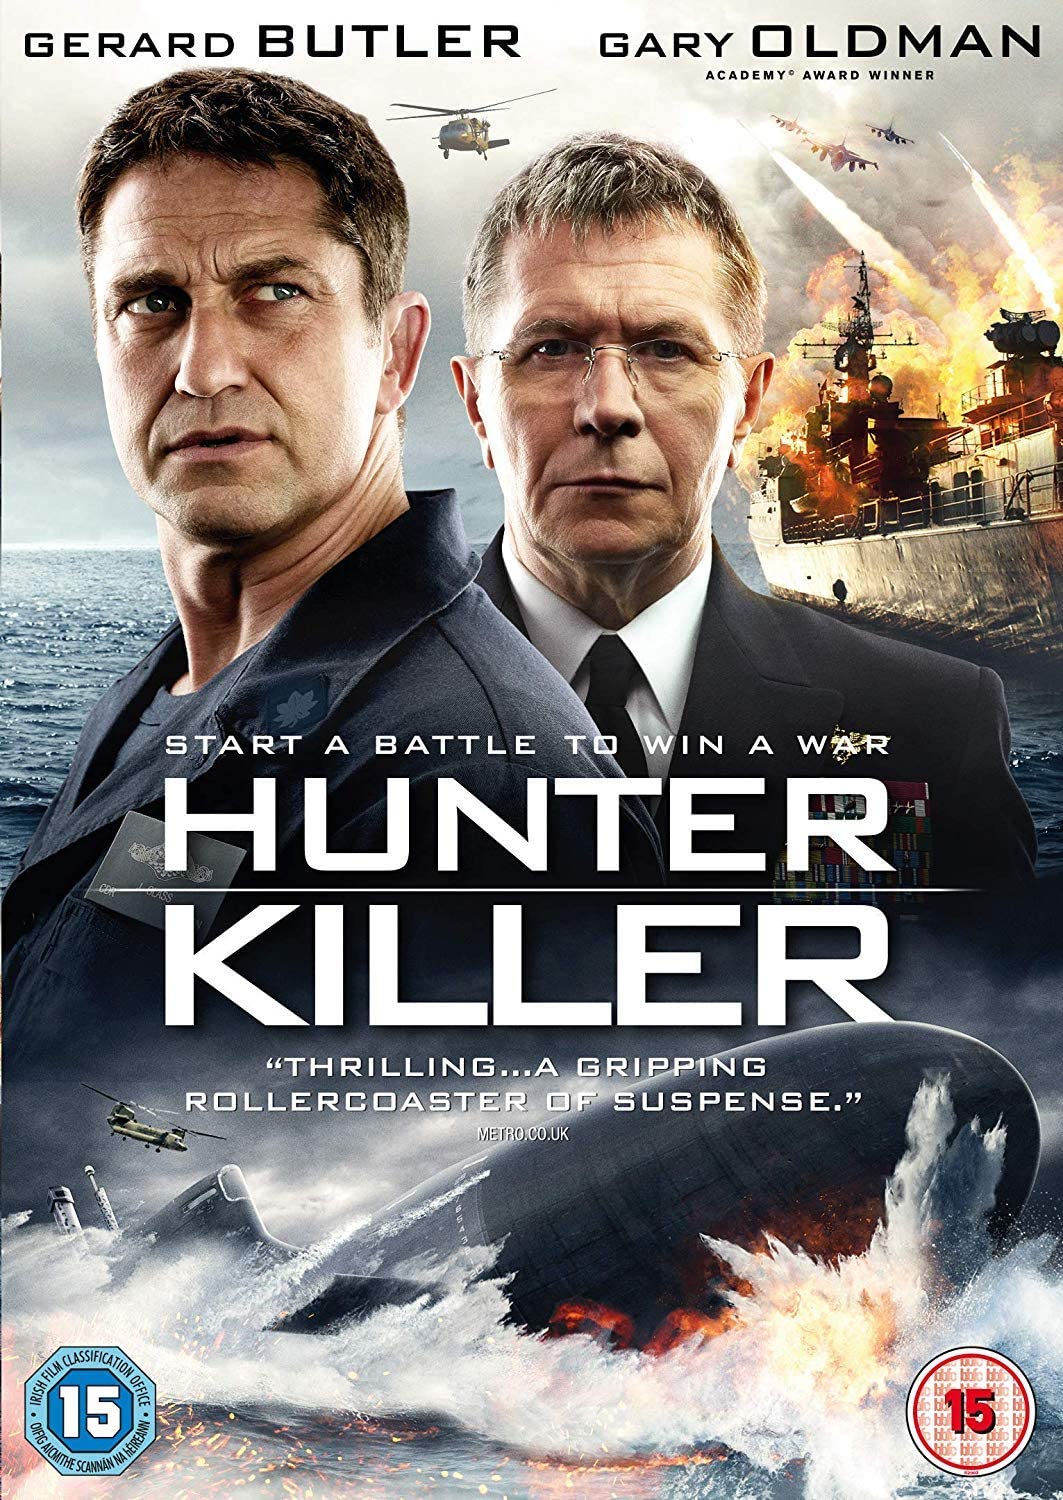 Hunter Killer - Action/Thriller [DVD]